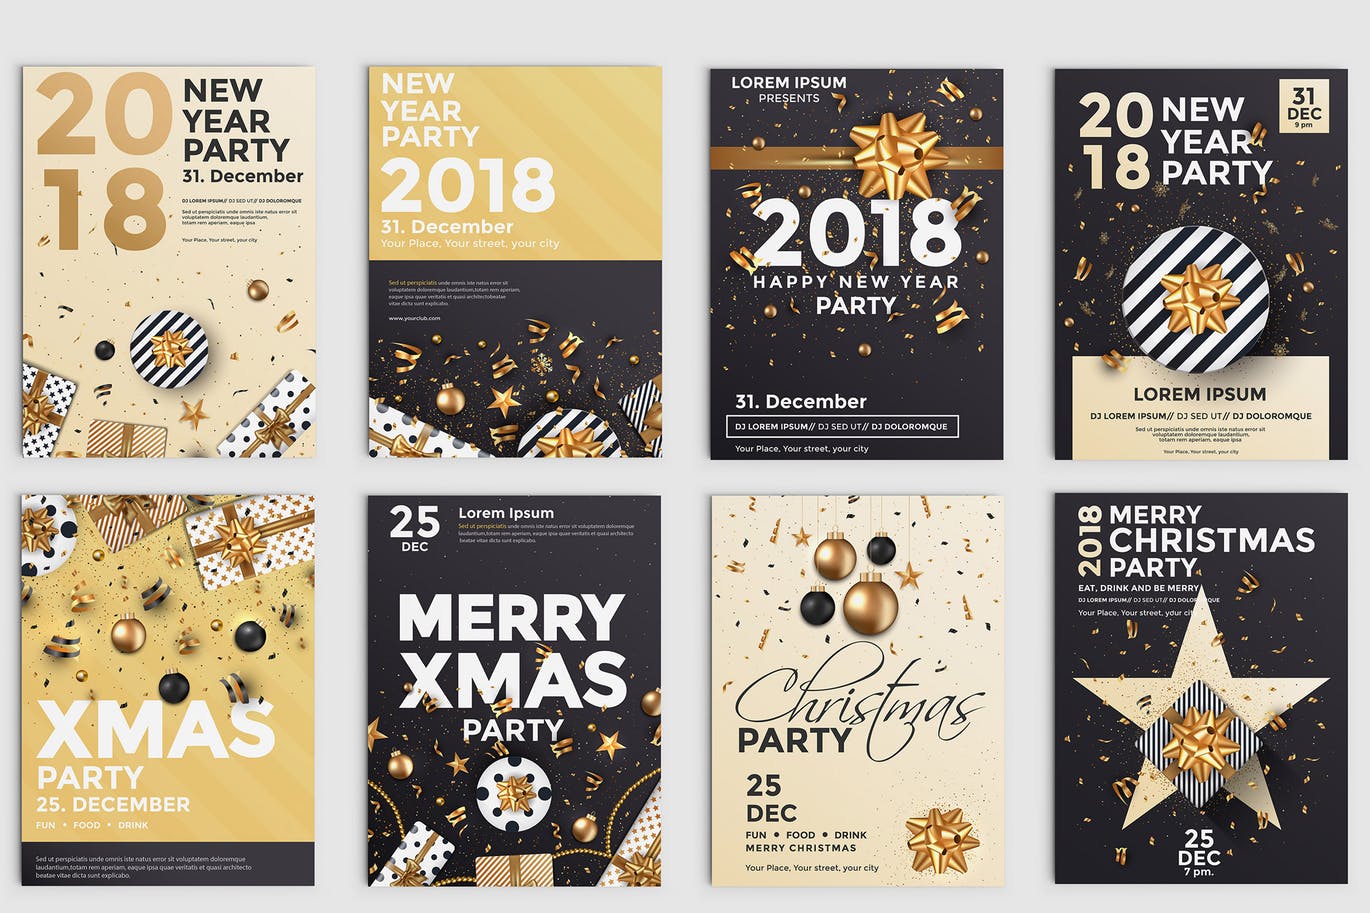 浓厚节日氛围圣诞节派对活动传单海报设计模板合集 Set of 10 Christmas Party Flyer Templates插图